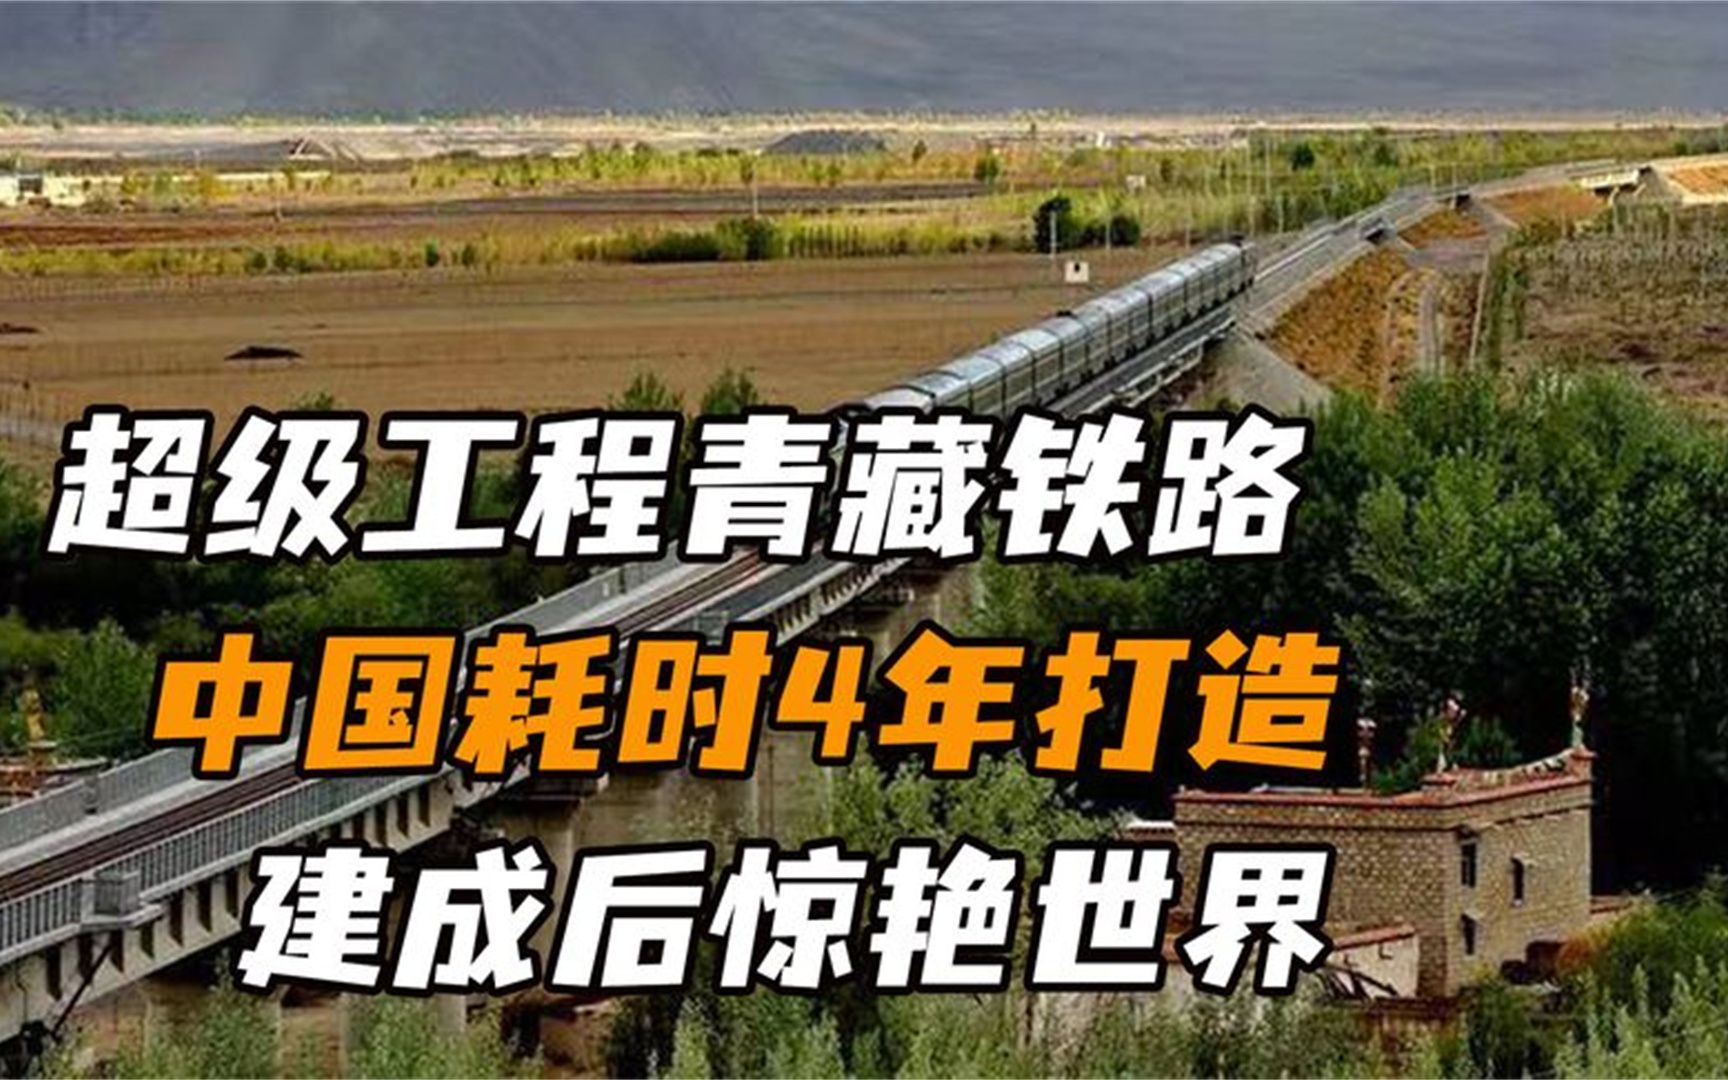 我国的宏伟工程之一,青藏铁路,通往世界屋脊的桥梁